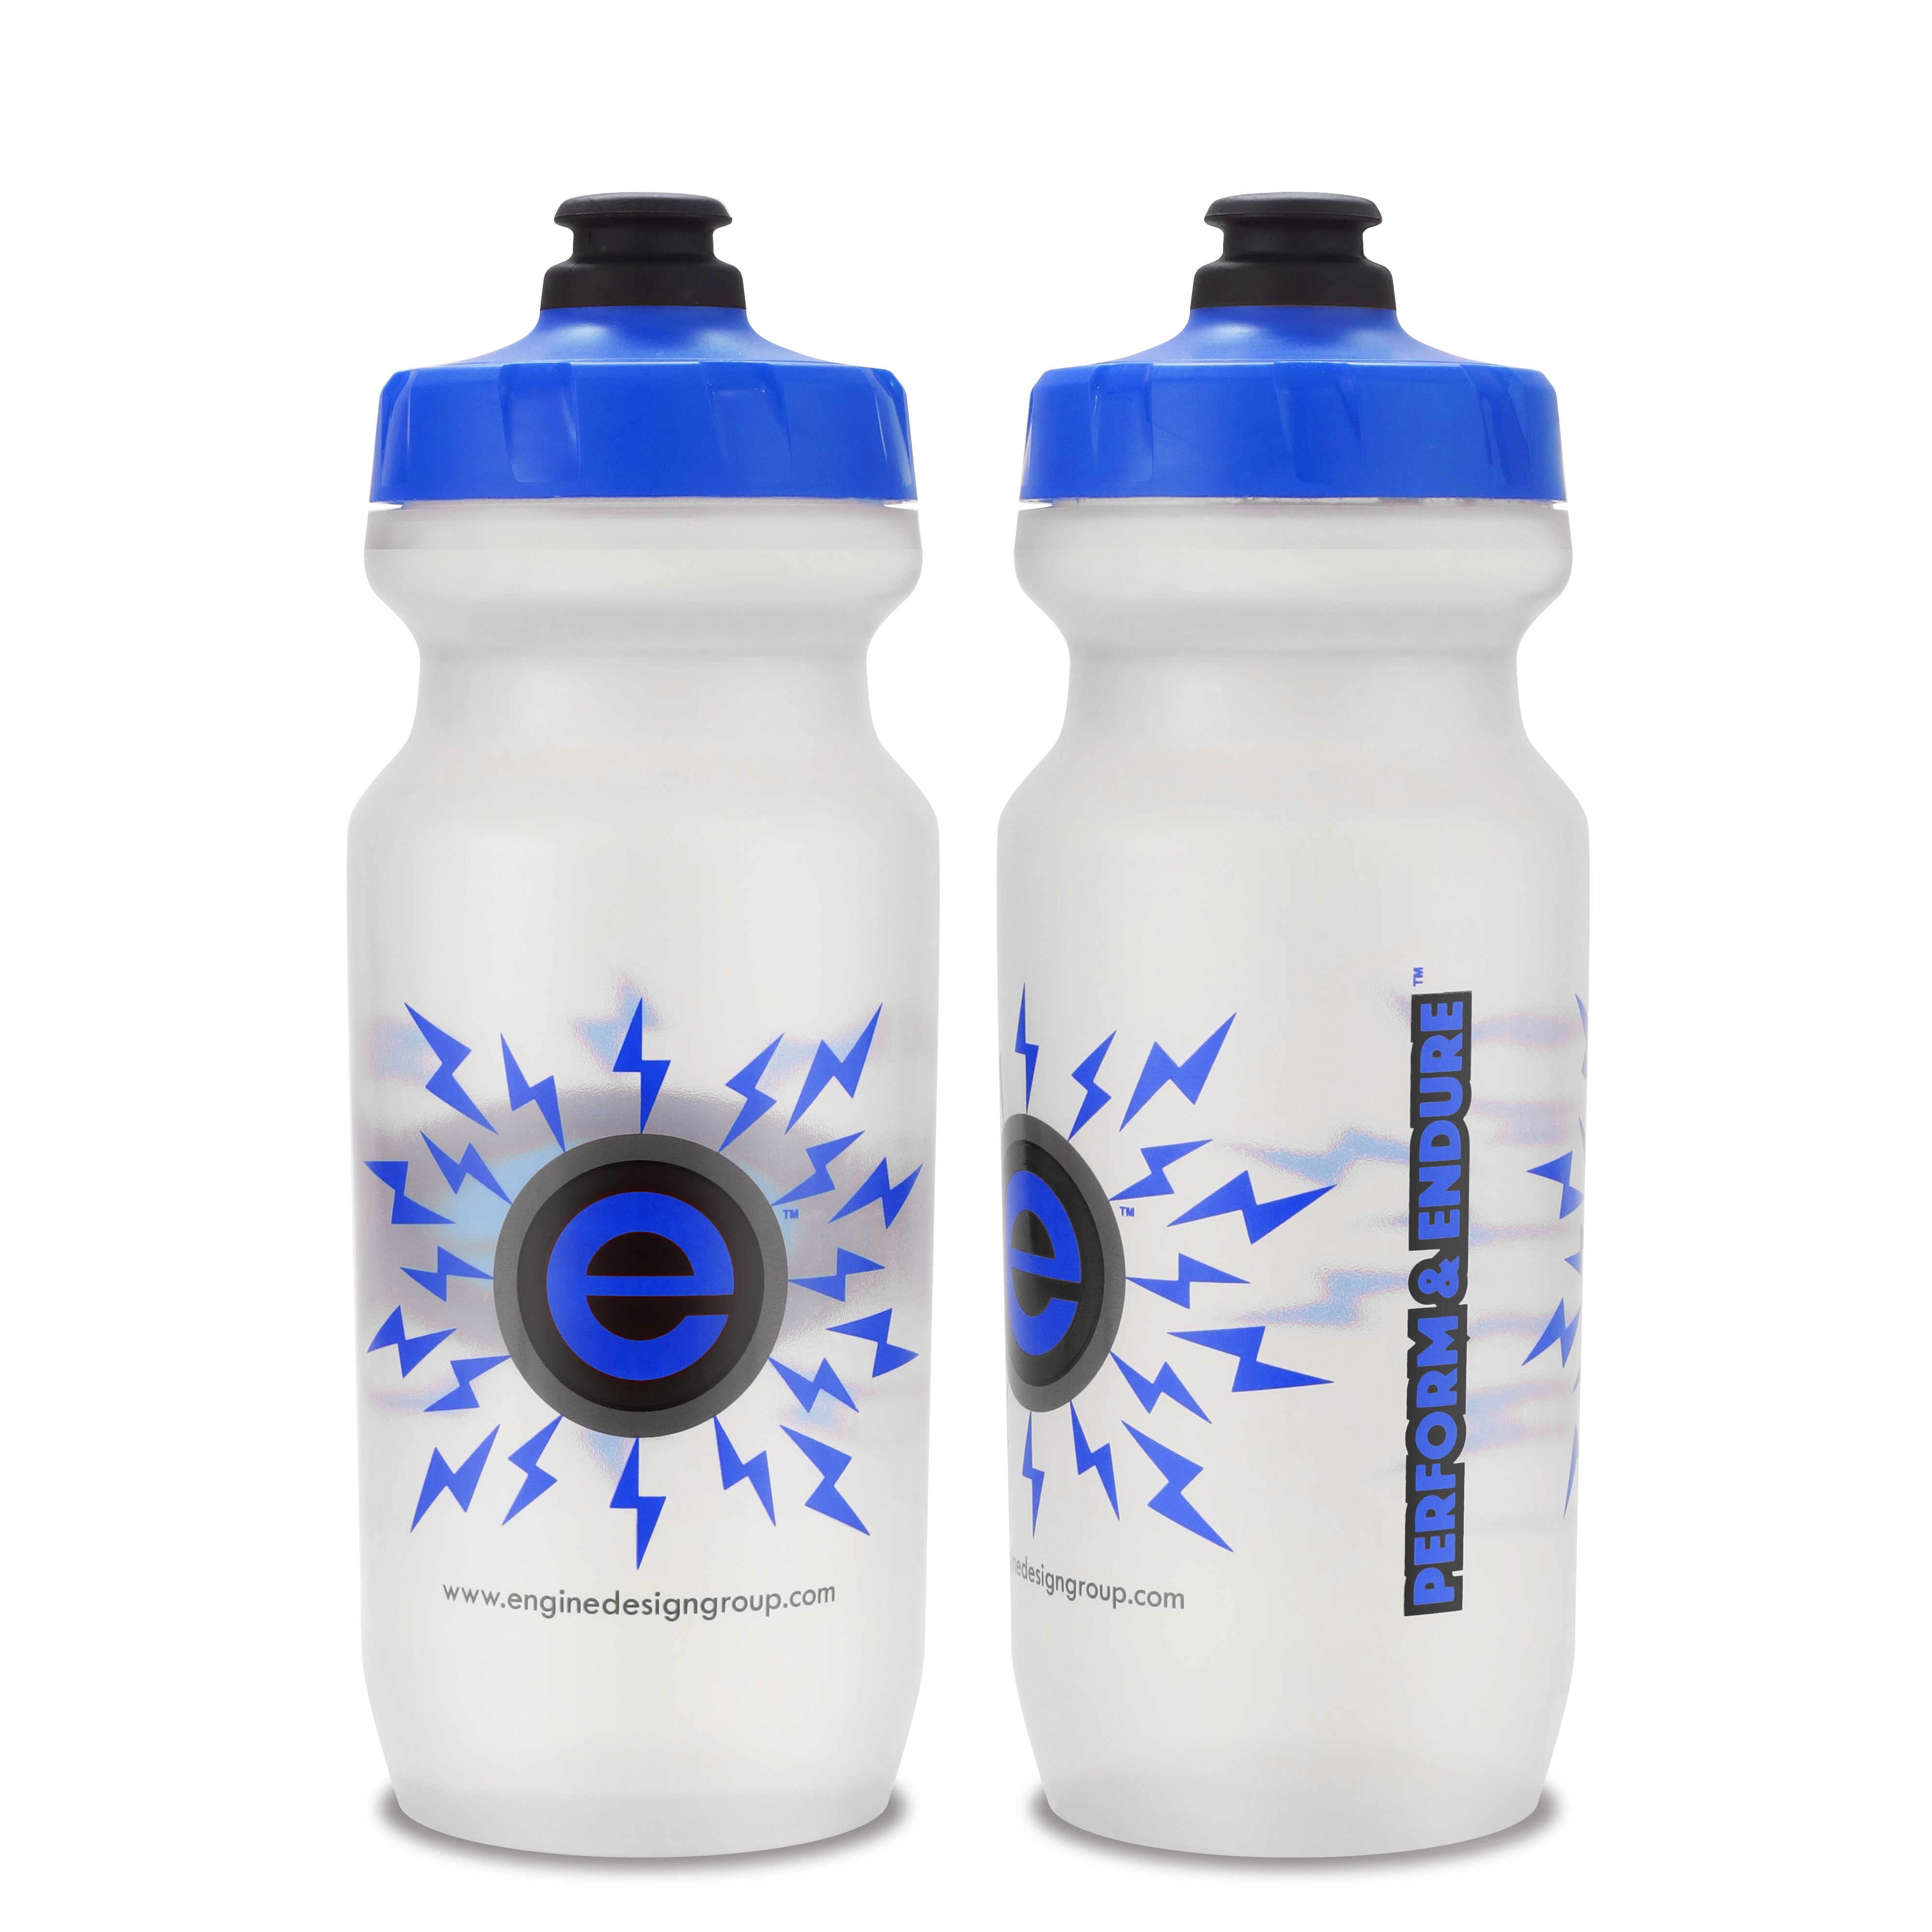 https://www.enginedesigngroup.com/cdn/shop/products/21oz-Engine-Design-Group-NGN-Sport-Bike-Water-Bottle-CLR-BLU.jpg?v=1567926502